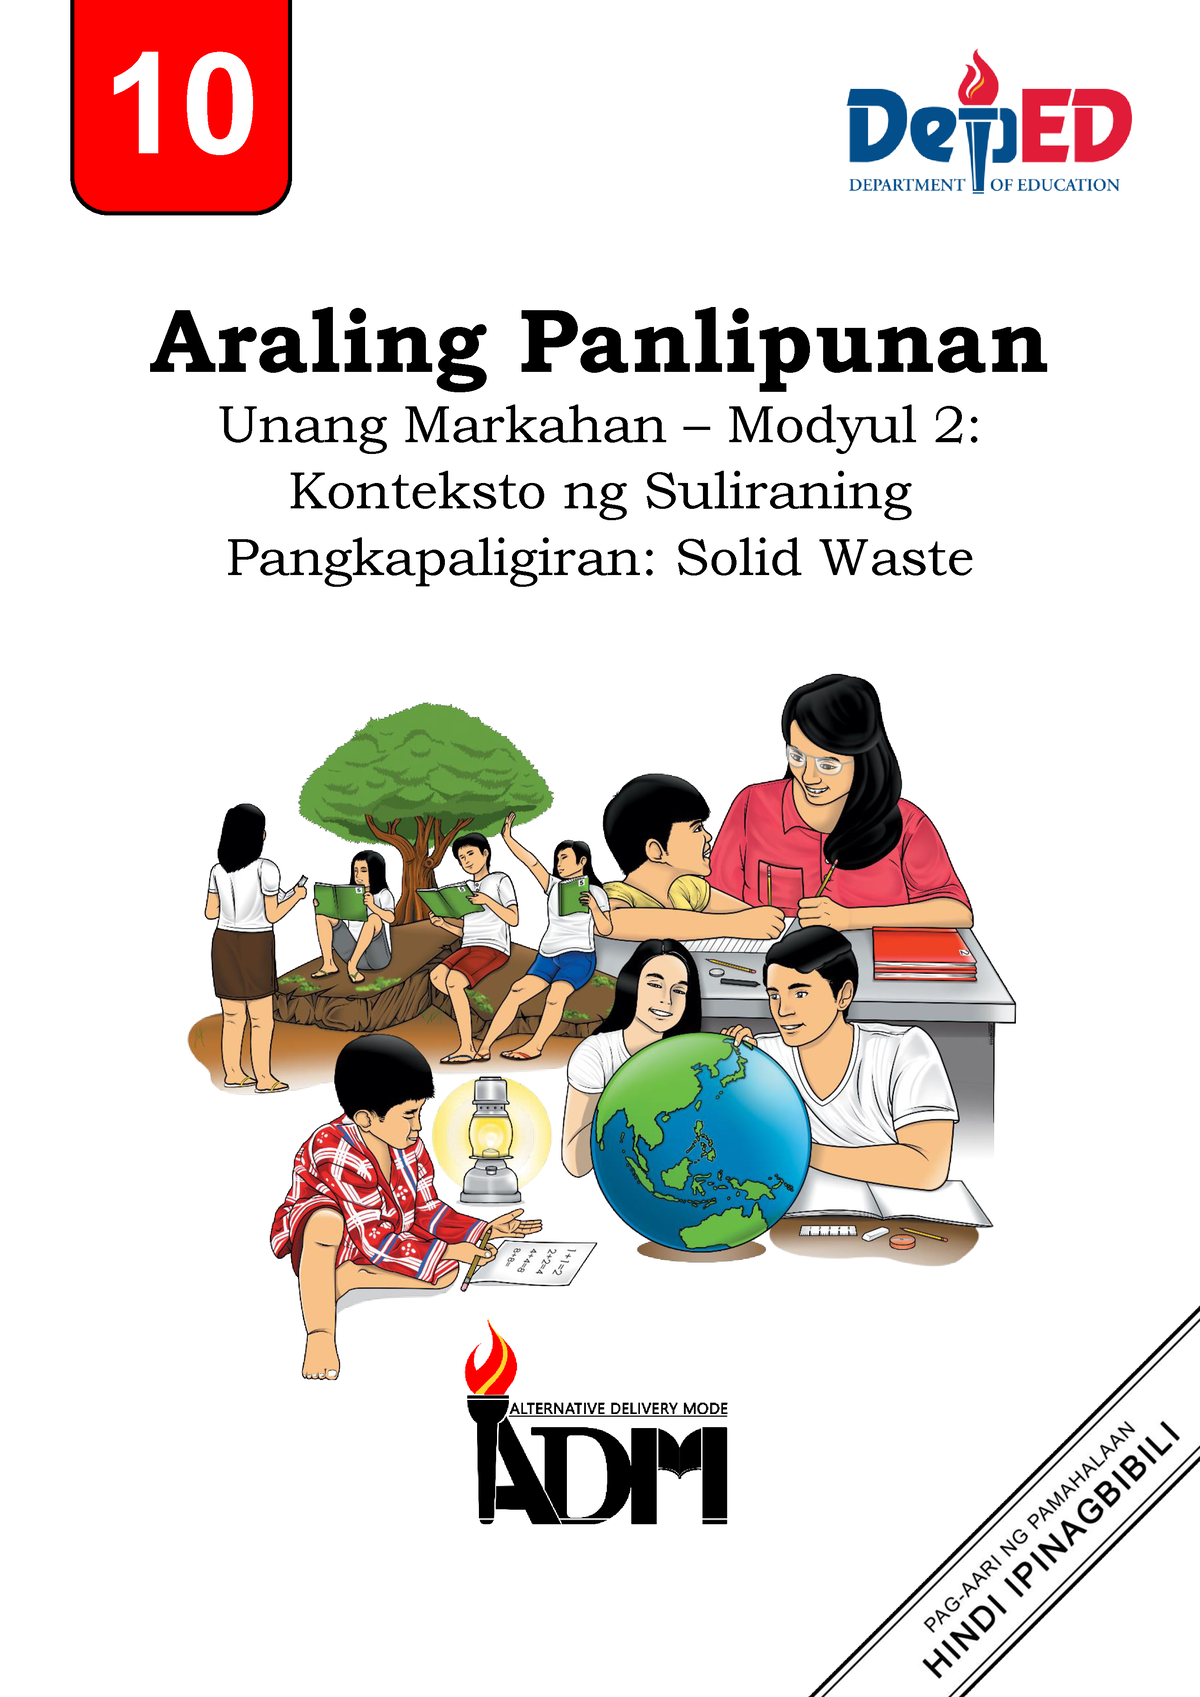 halimbawa ng case study tagalog tungkol sa suliraning pangkapaligiran